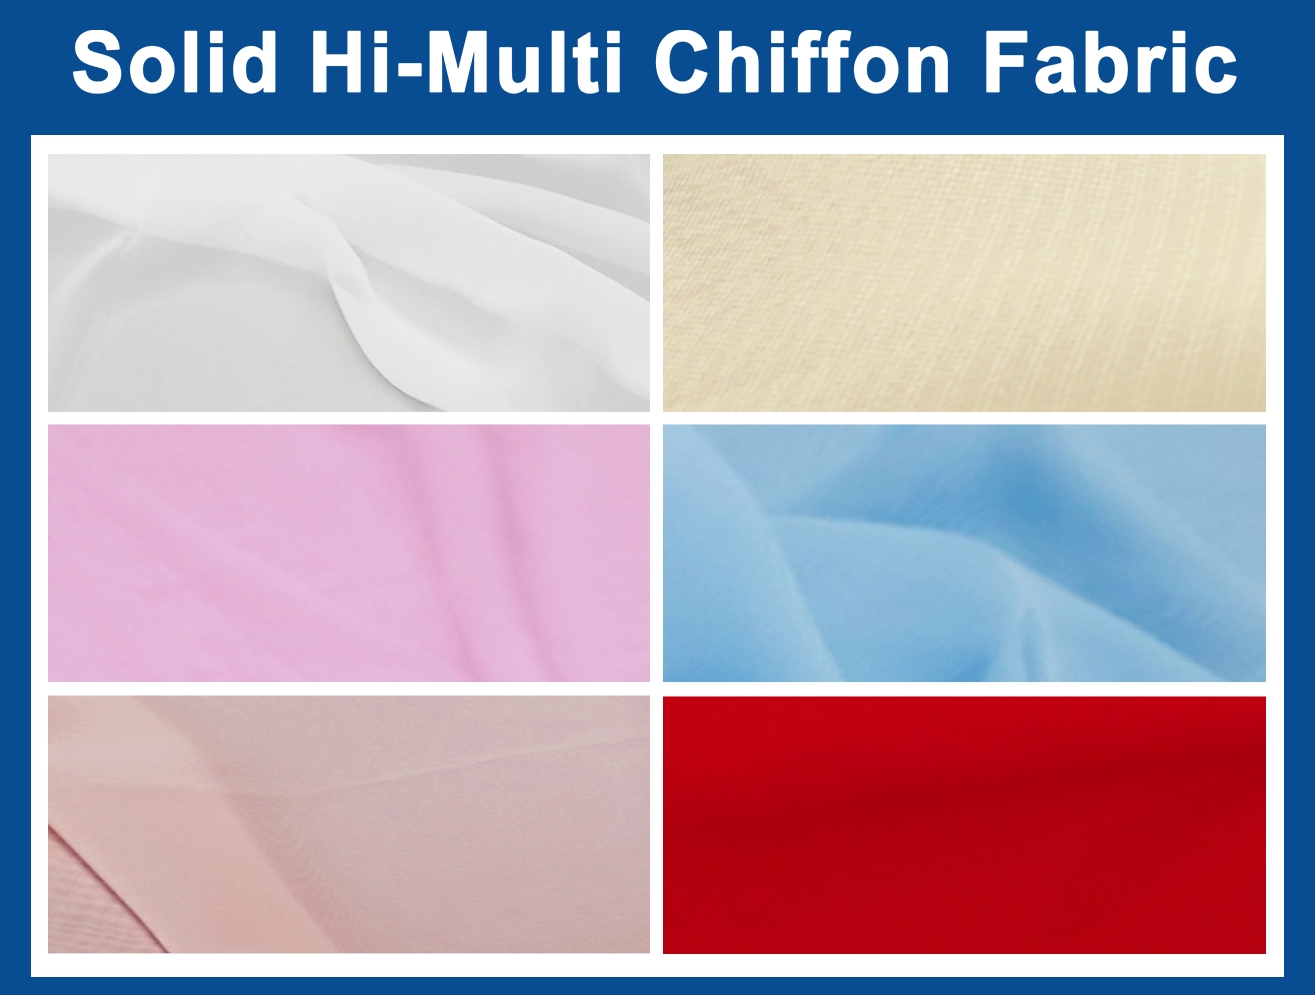 Solid Hi-Multi Chiffon Fabric